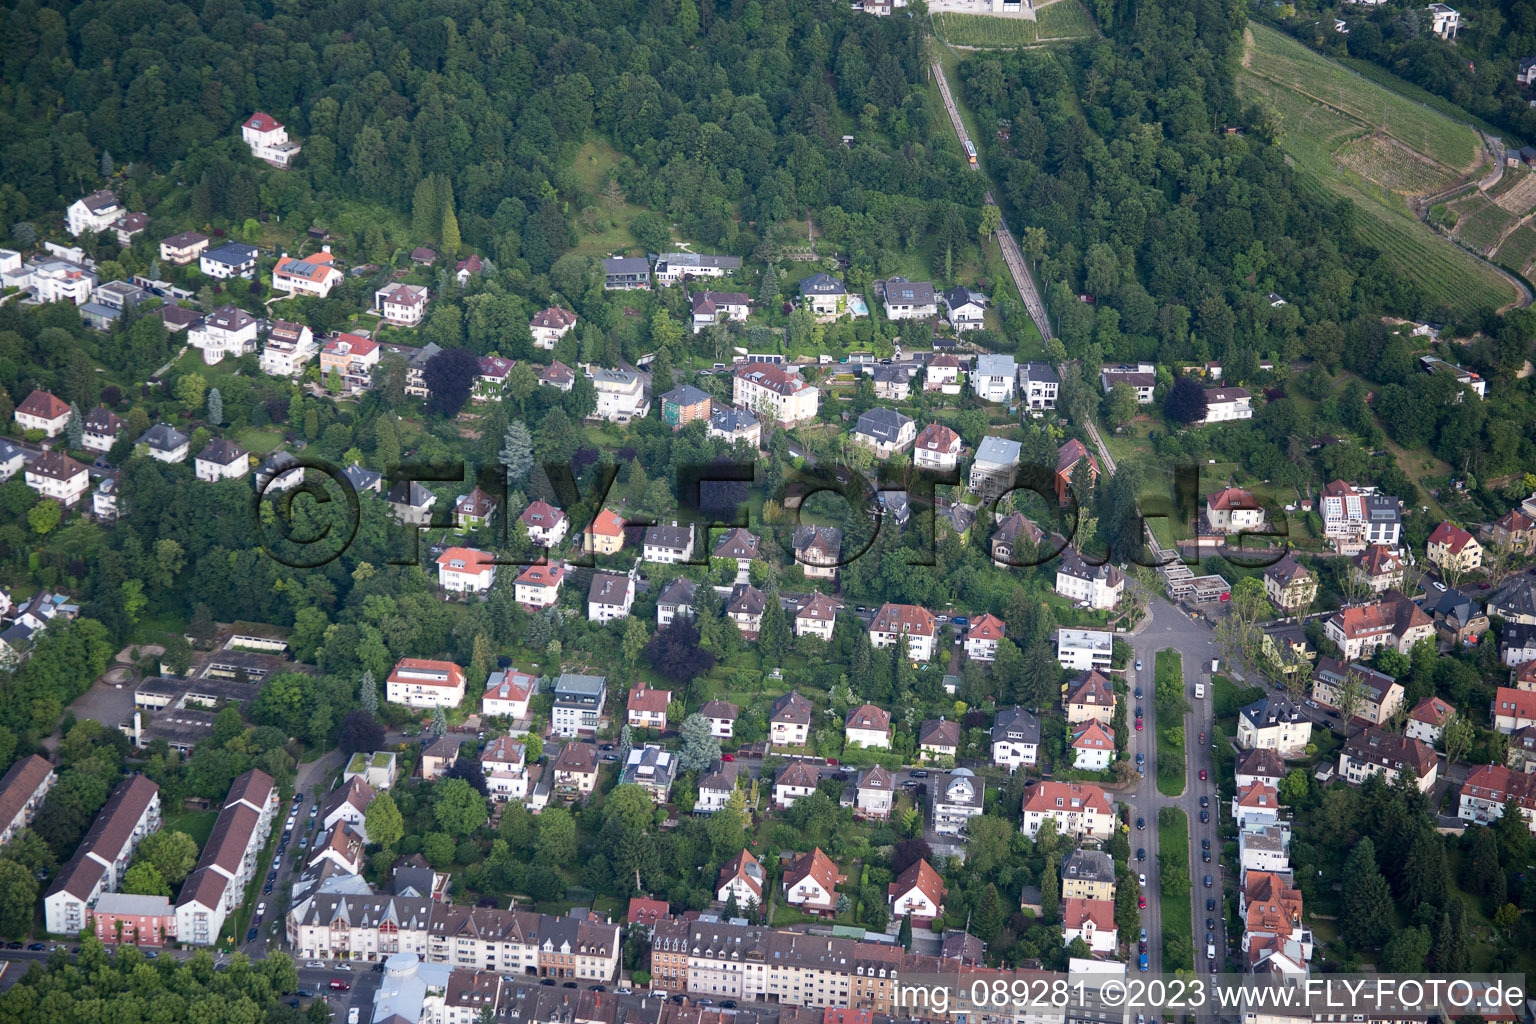 Luftbild von Turmbergstr im Ortsteil Durlach in Karlsruhe im Bundesland Baden-Württemberg, Deutschland